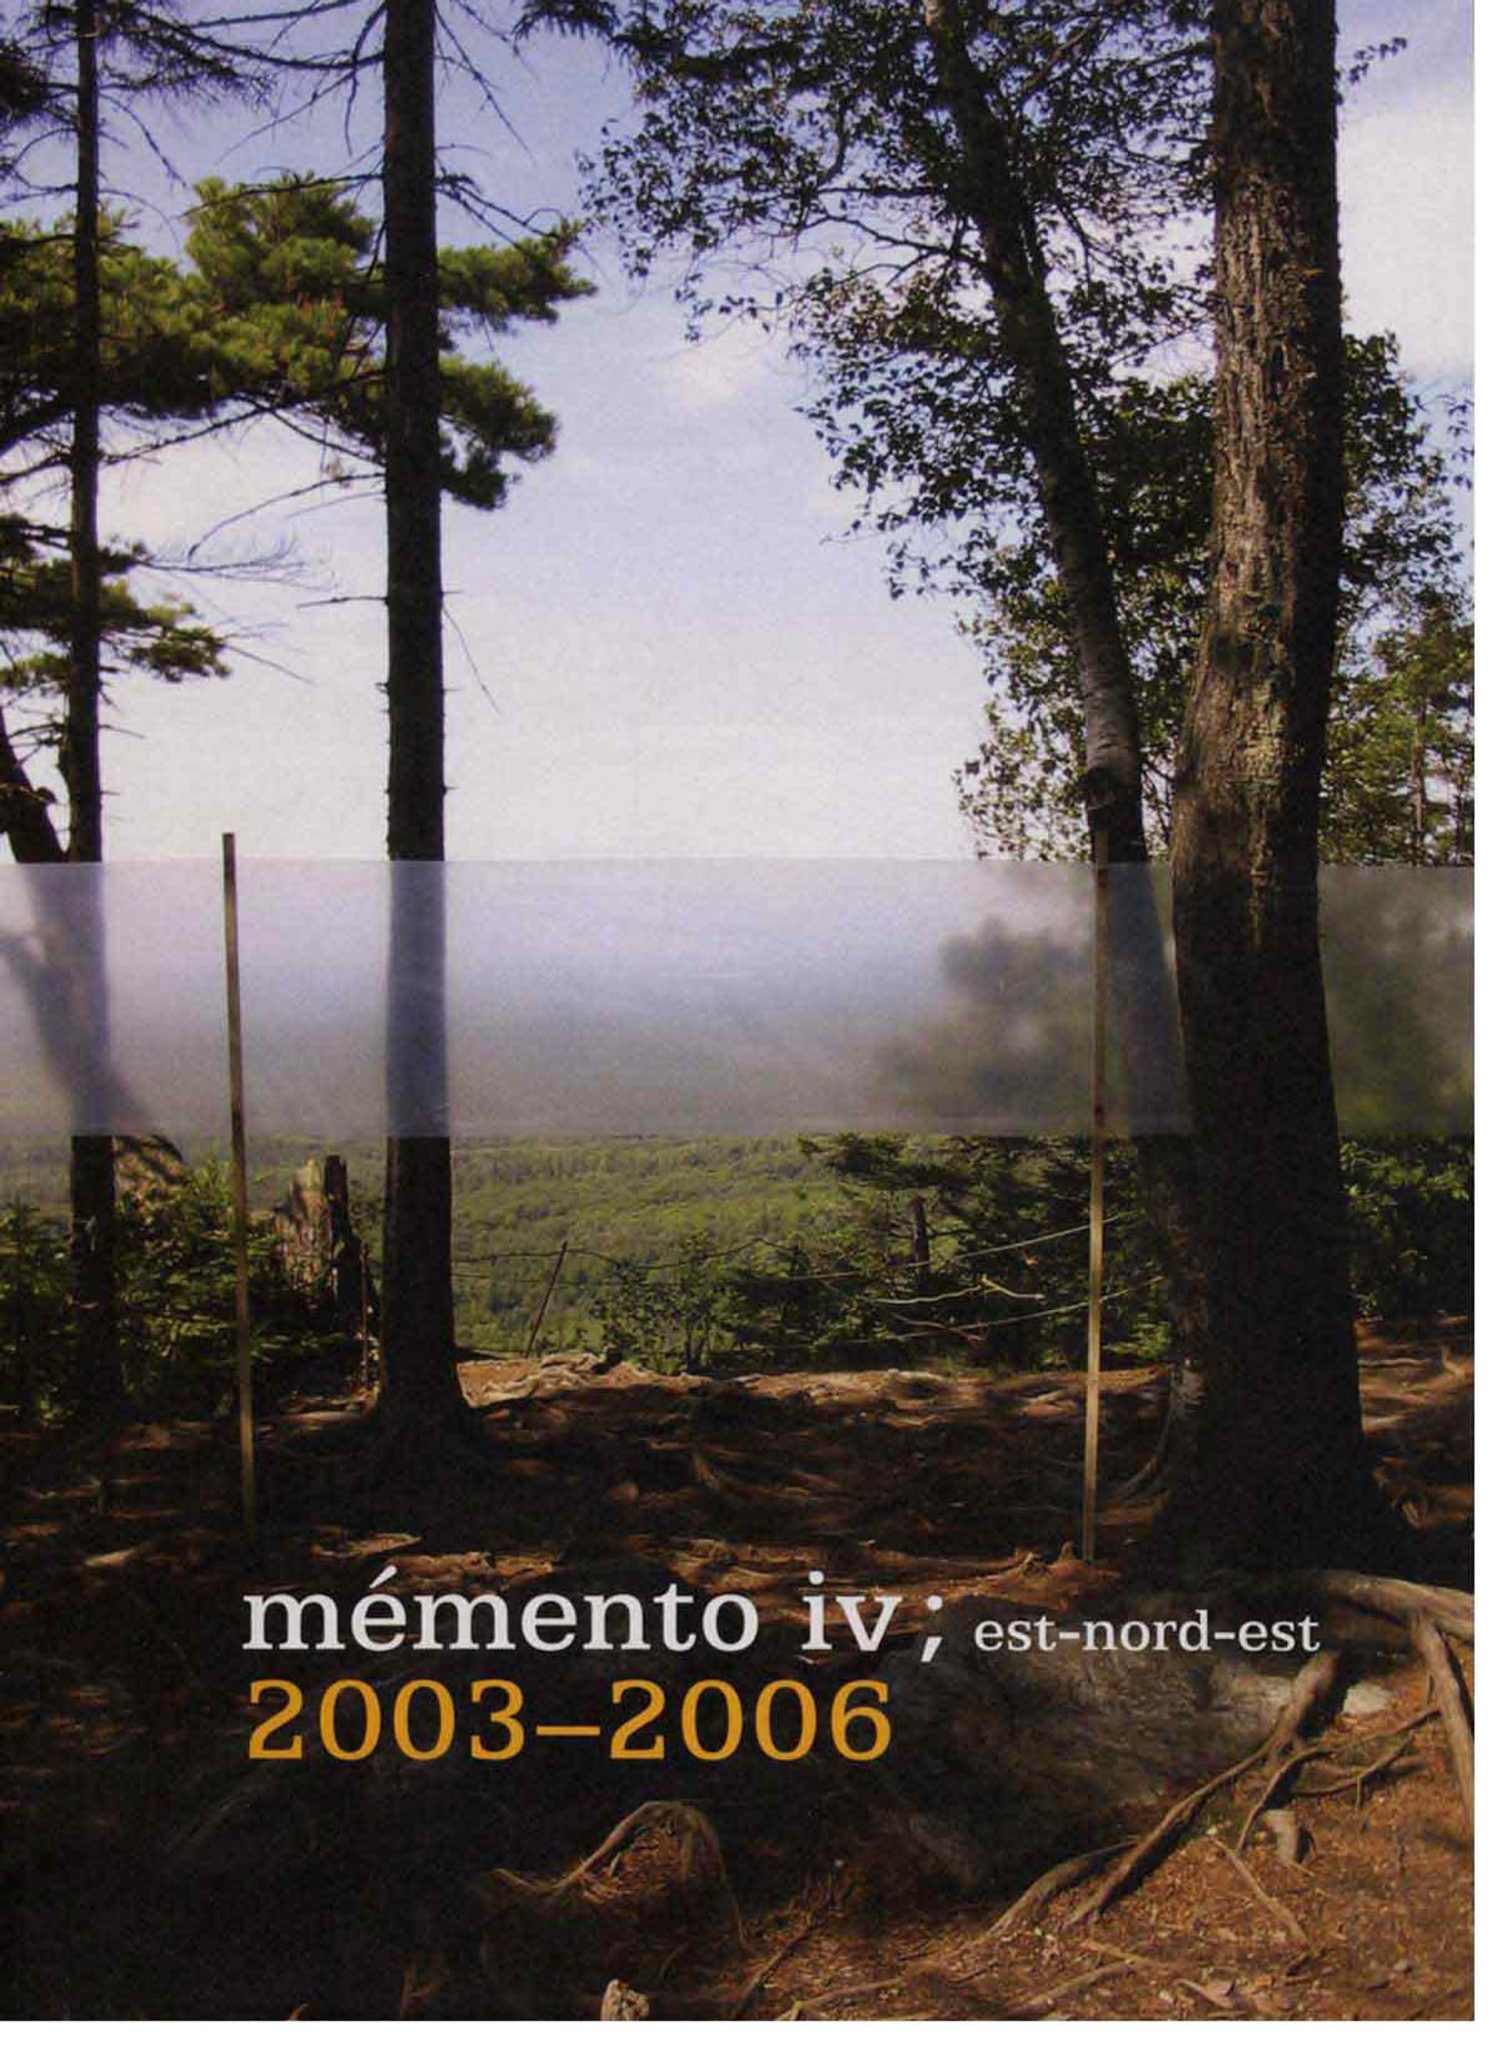 Couverture de la publication mémento iv; 2003-2006